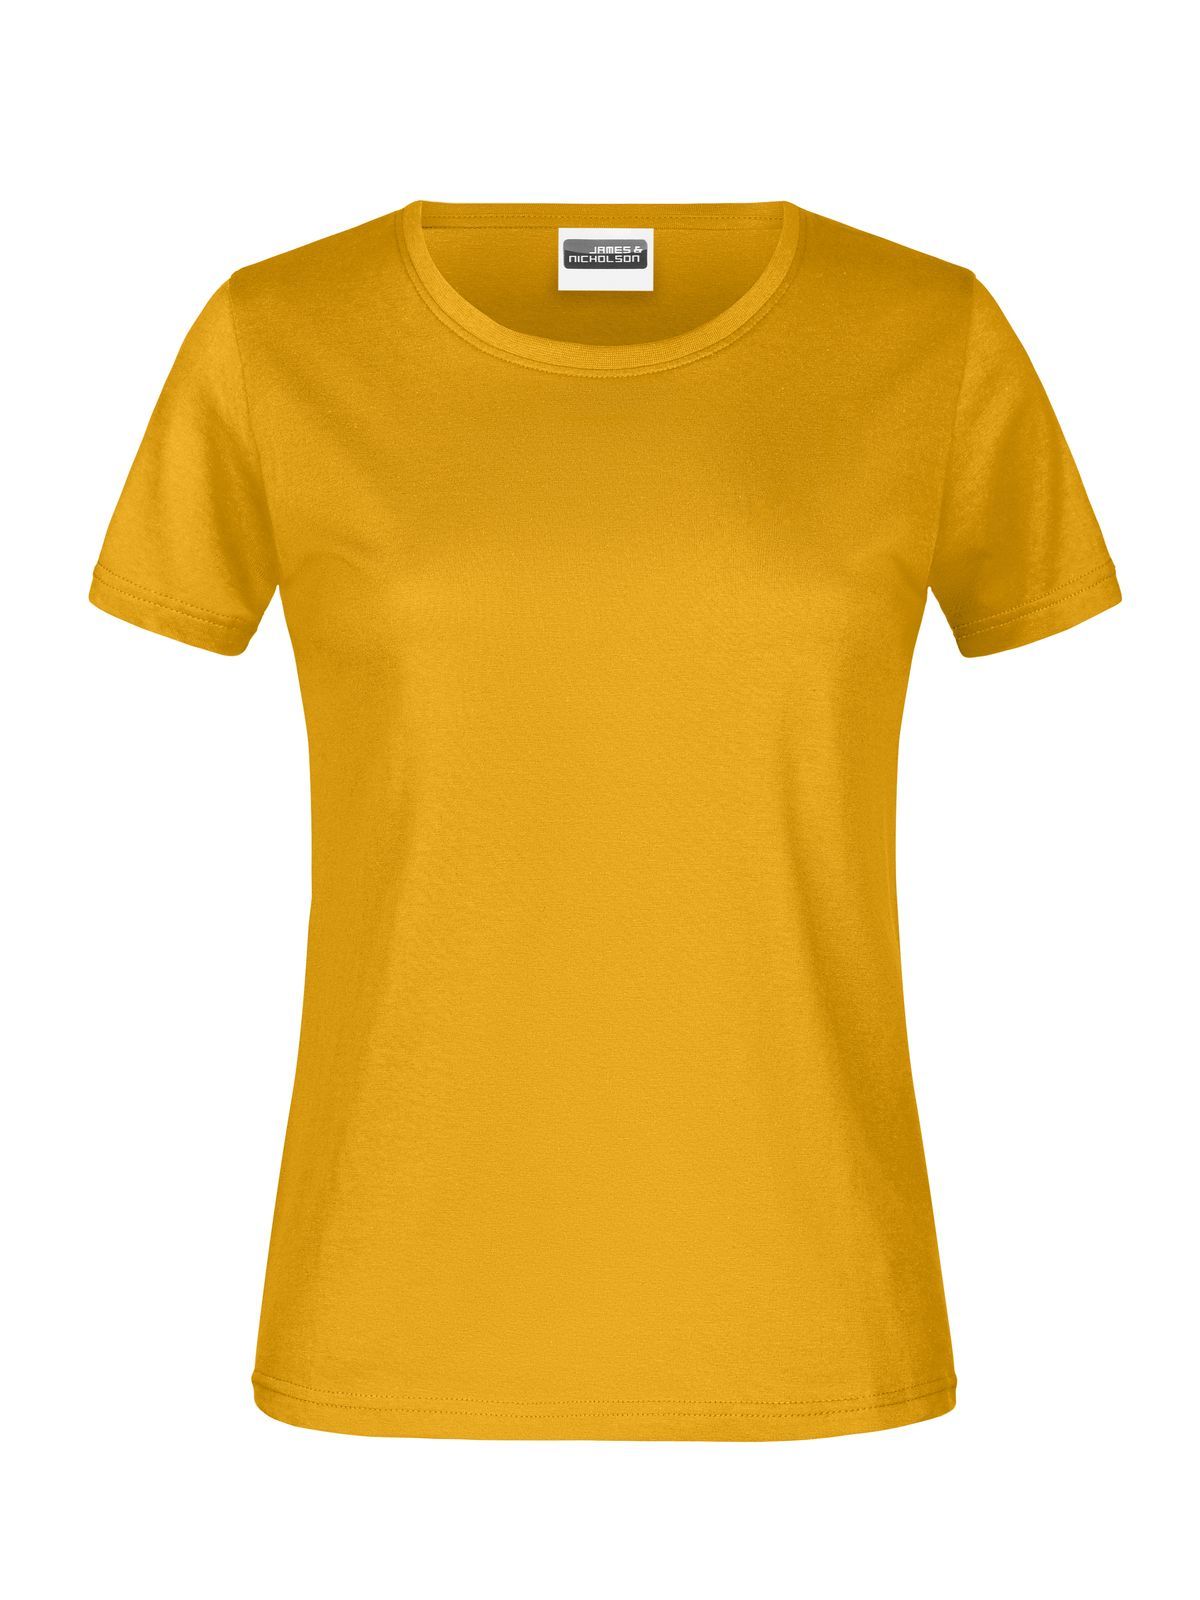 basic-t-lady-180-gold-yellow.webp